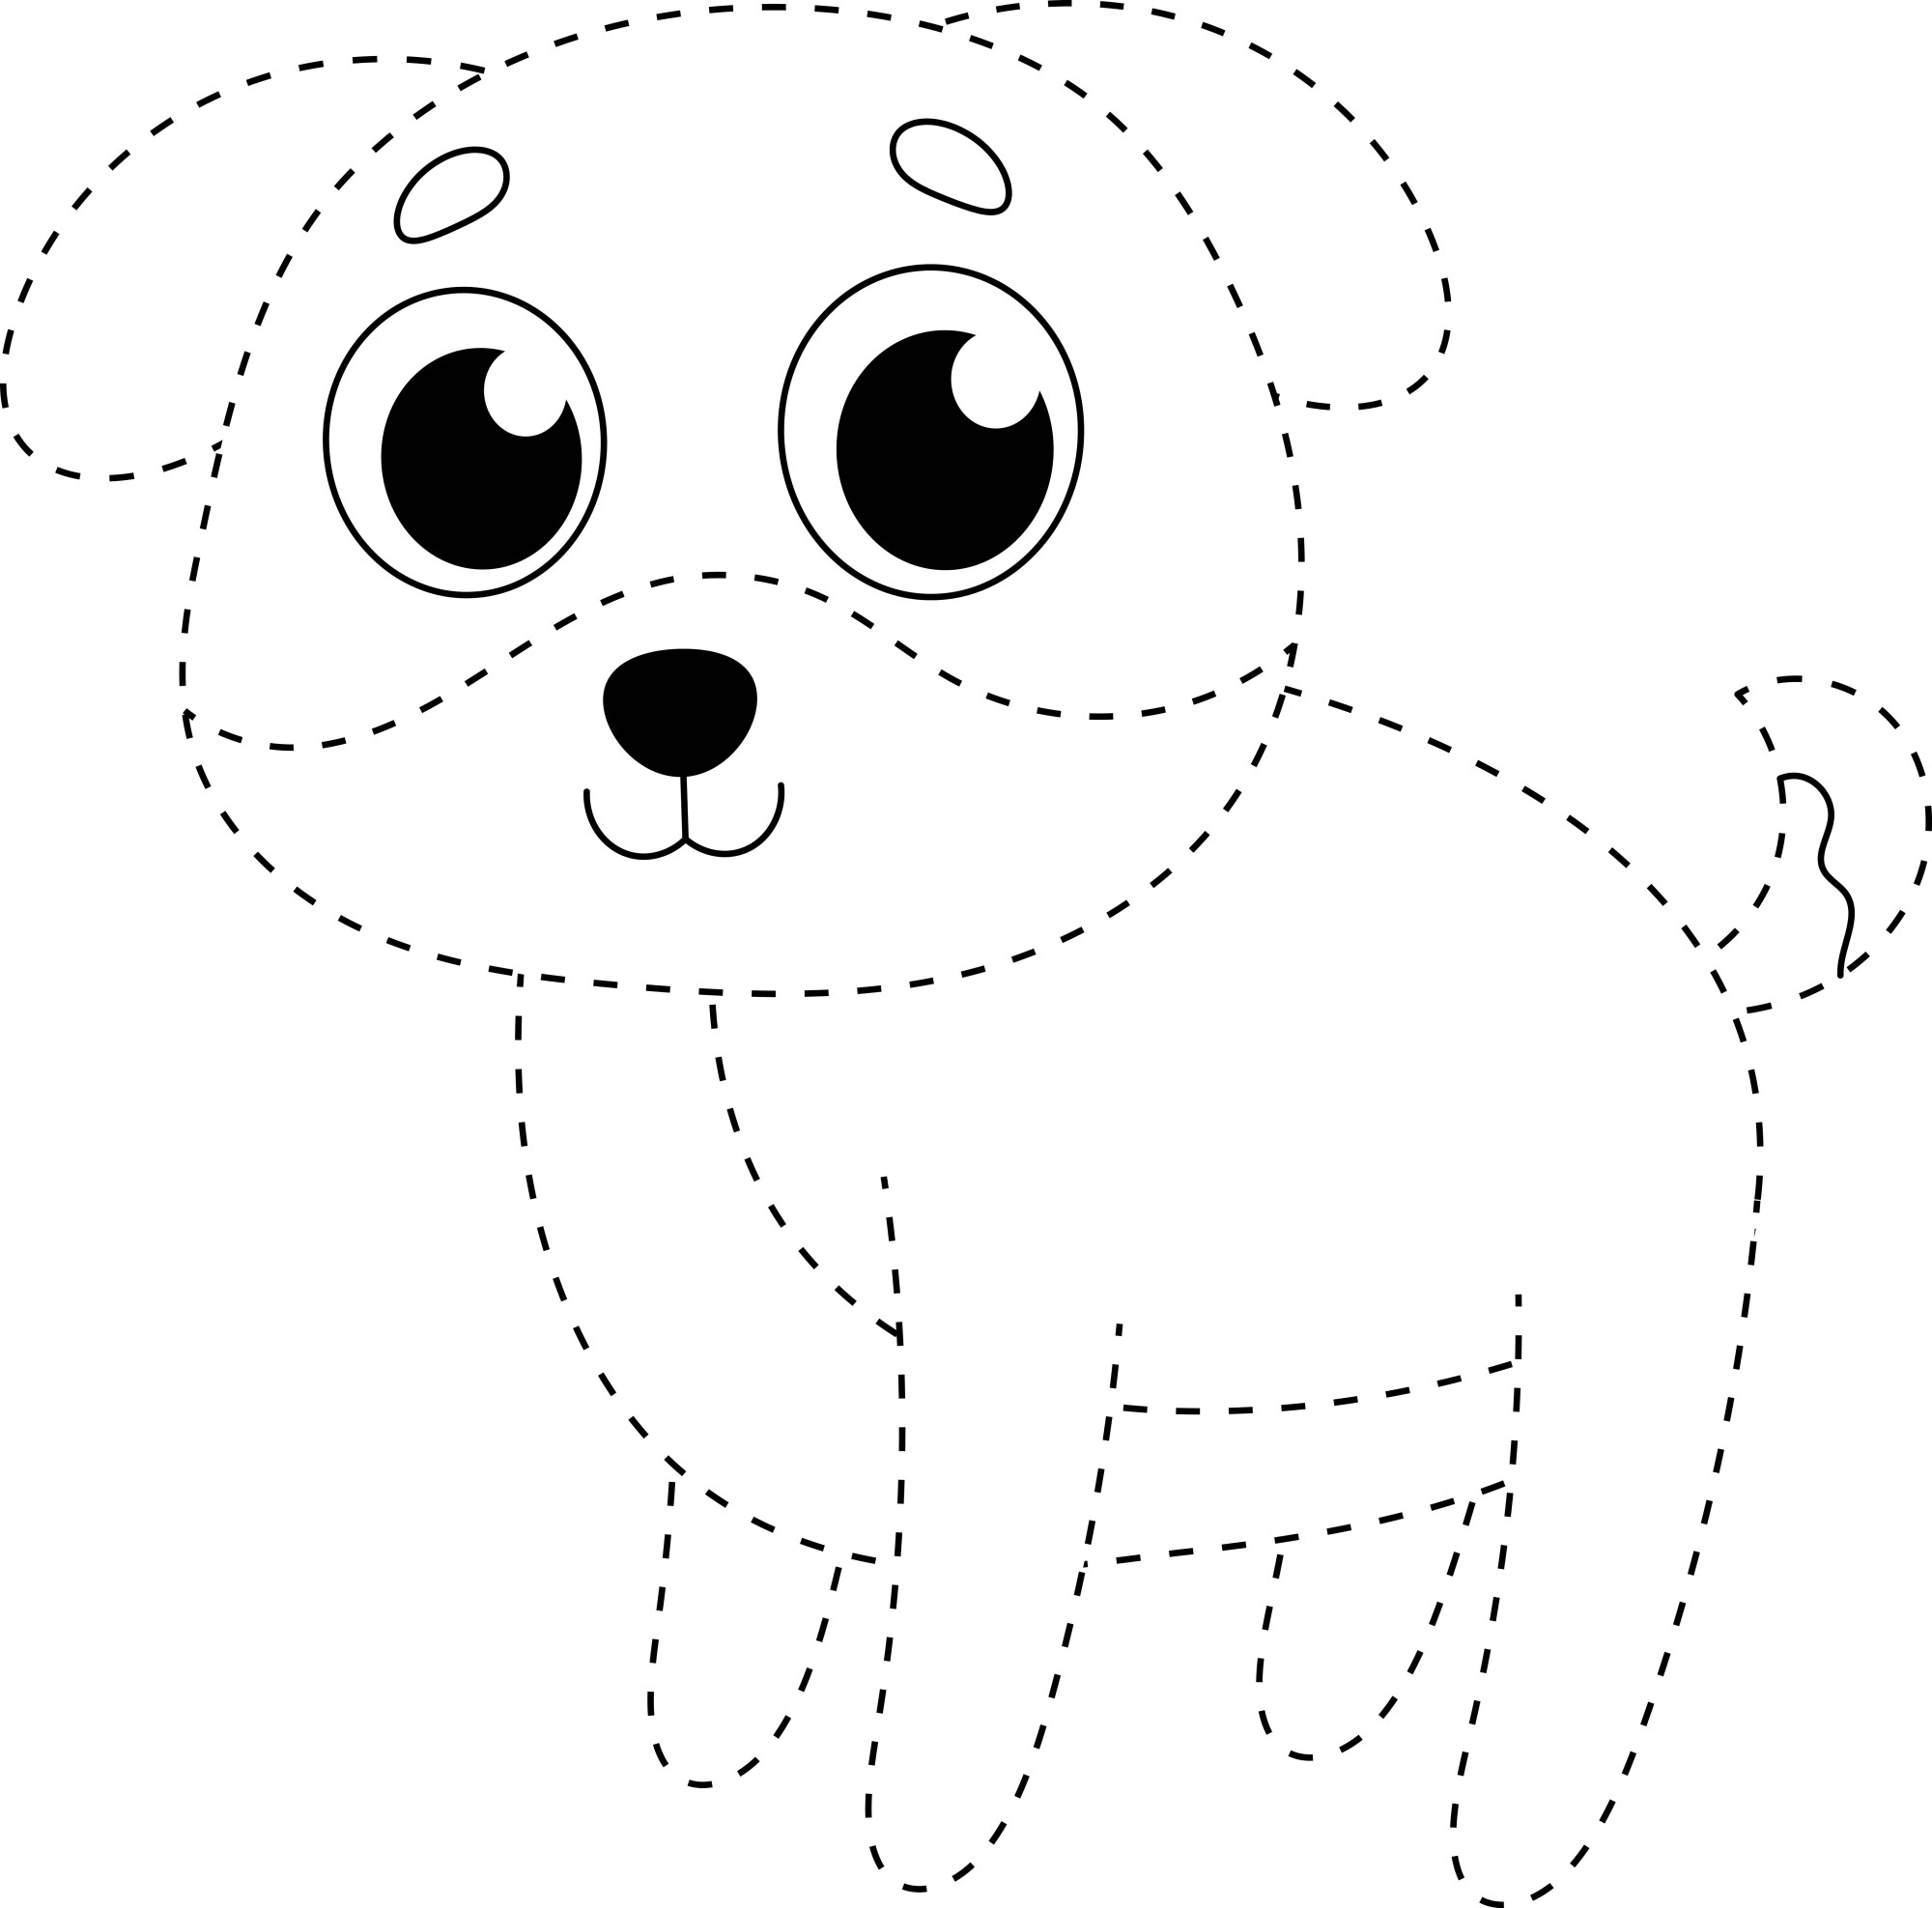 Раскраска для детей: собачка по точкам